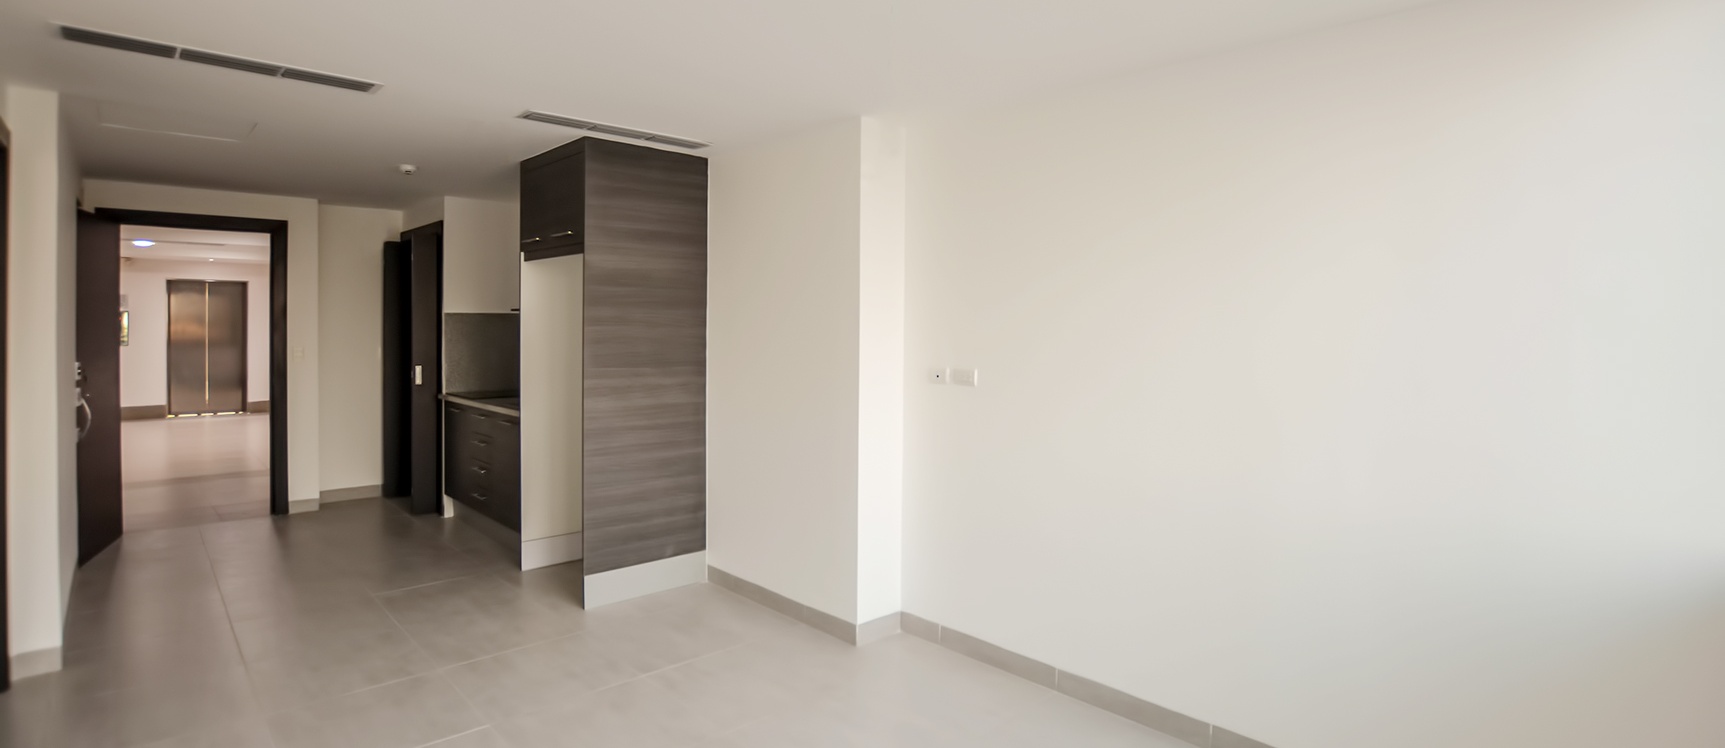 GeoBienes - Suite en venta en Edificio Quo sector norte de Guayaquil - Plusvalia Guayaquil Casas de venta y alquiler Inmobiliaria Ecuador